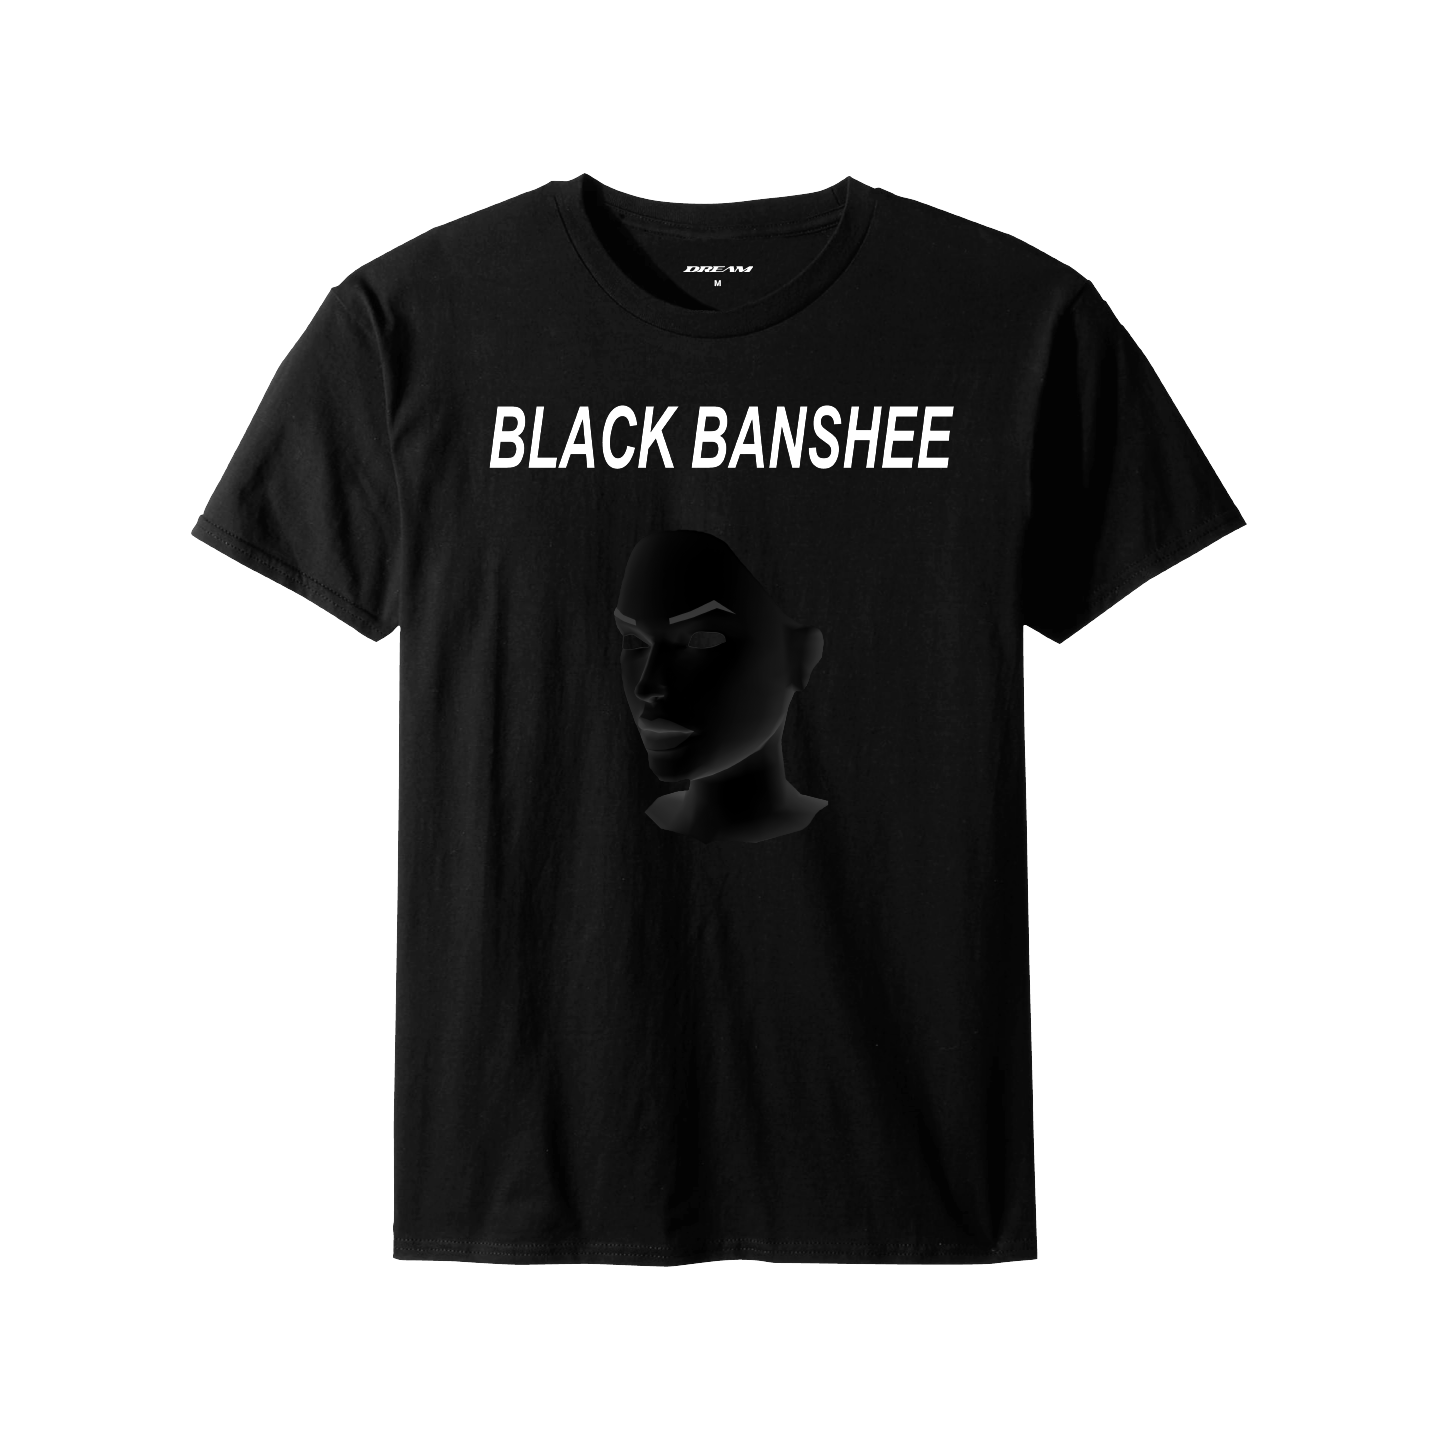 'Black Banshee' Premium Tee